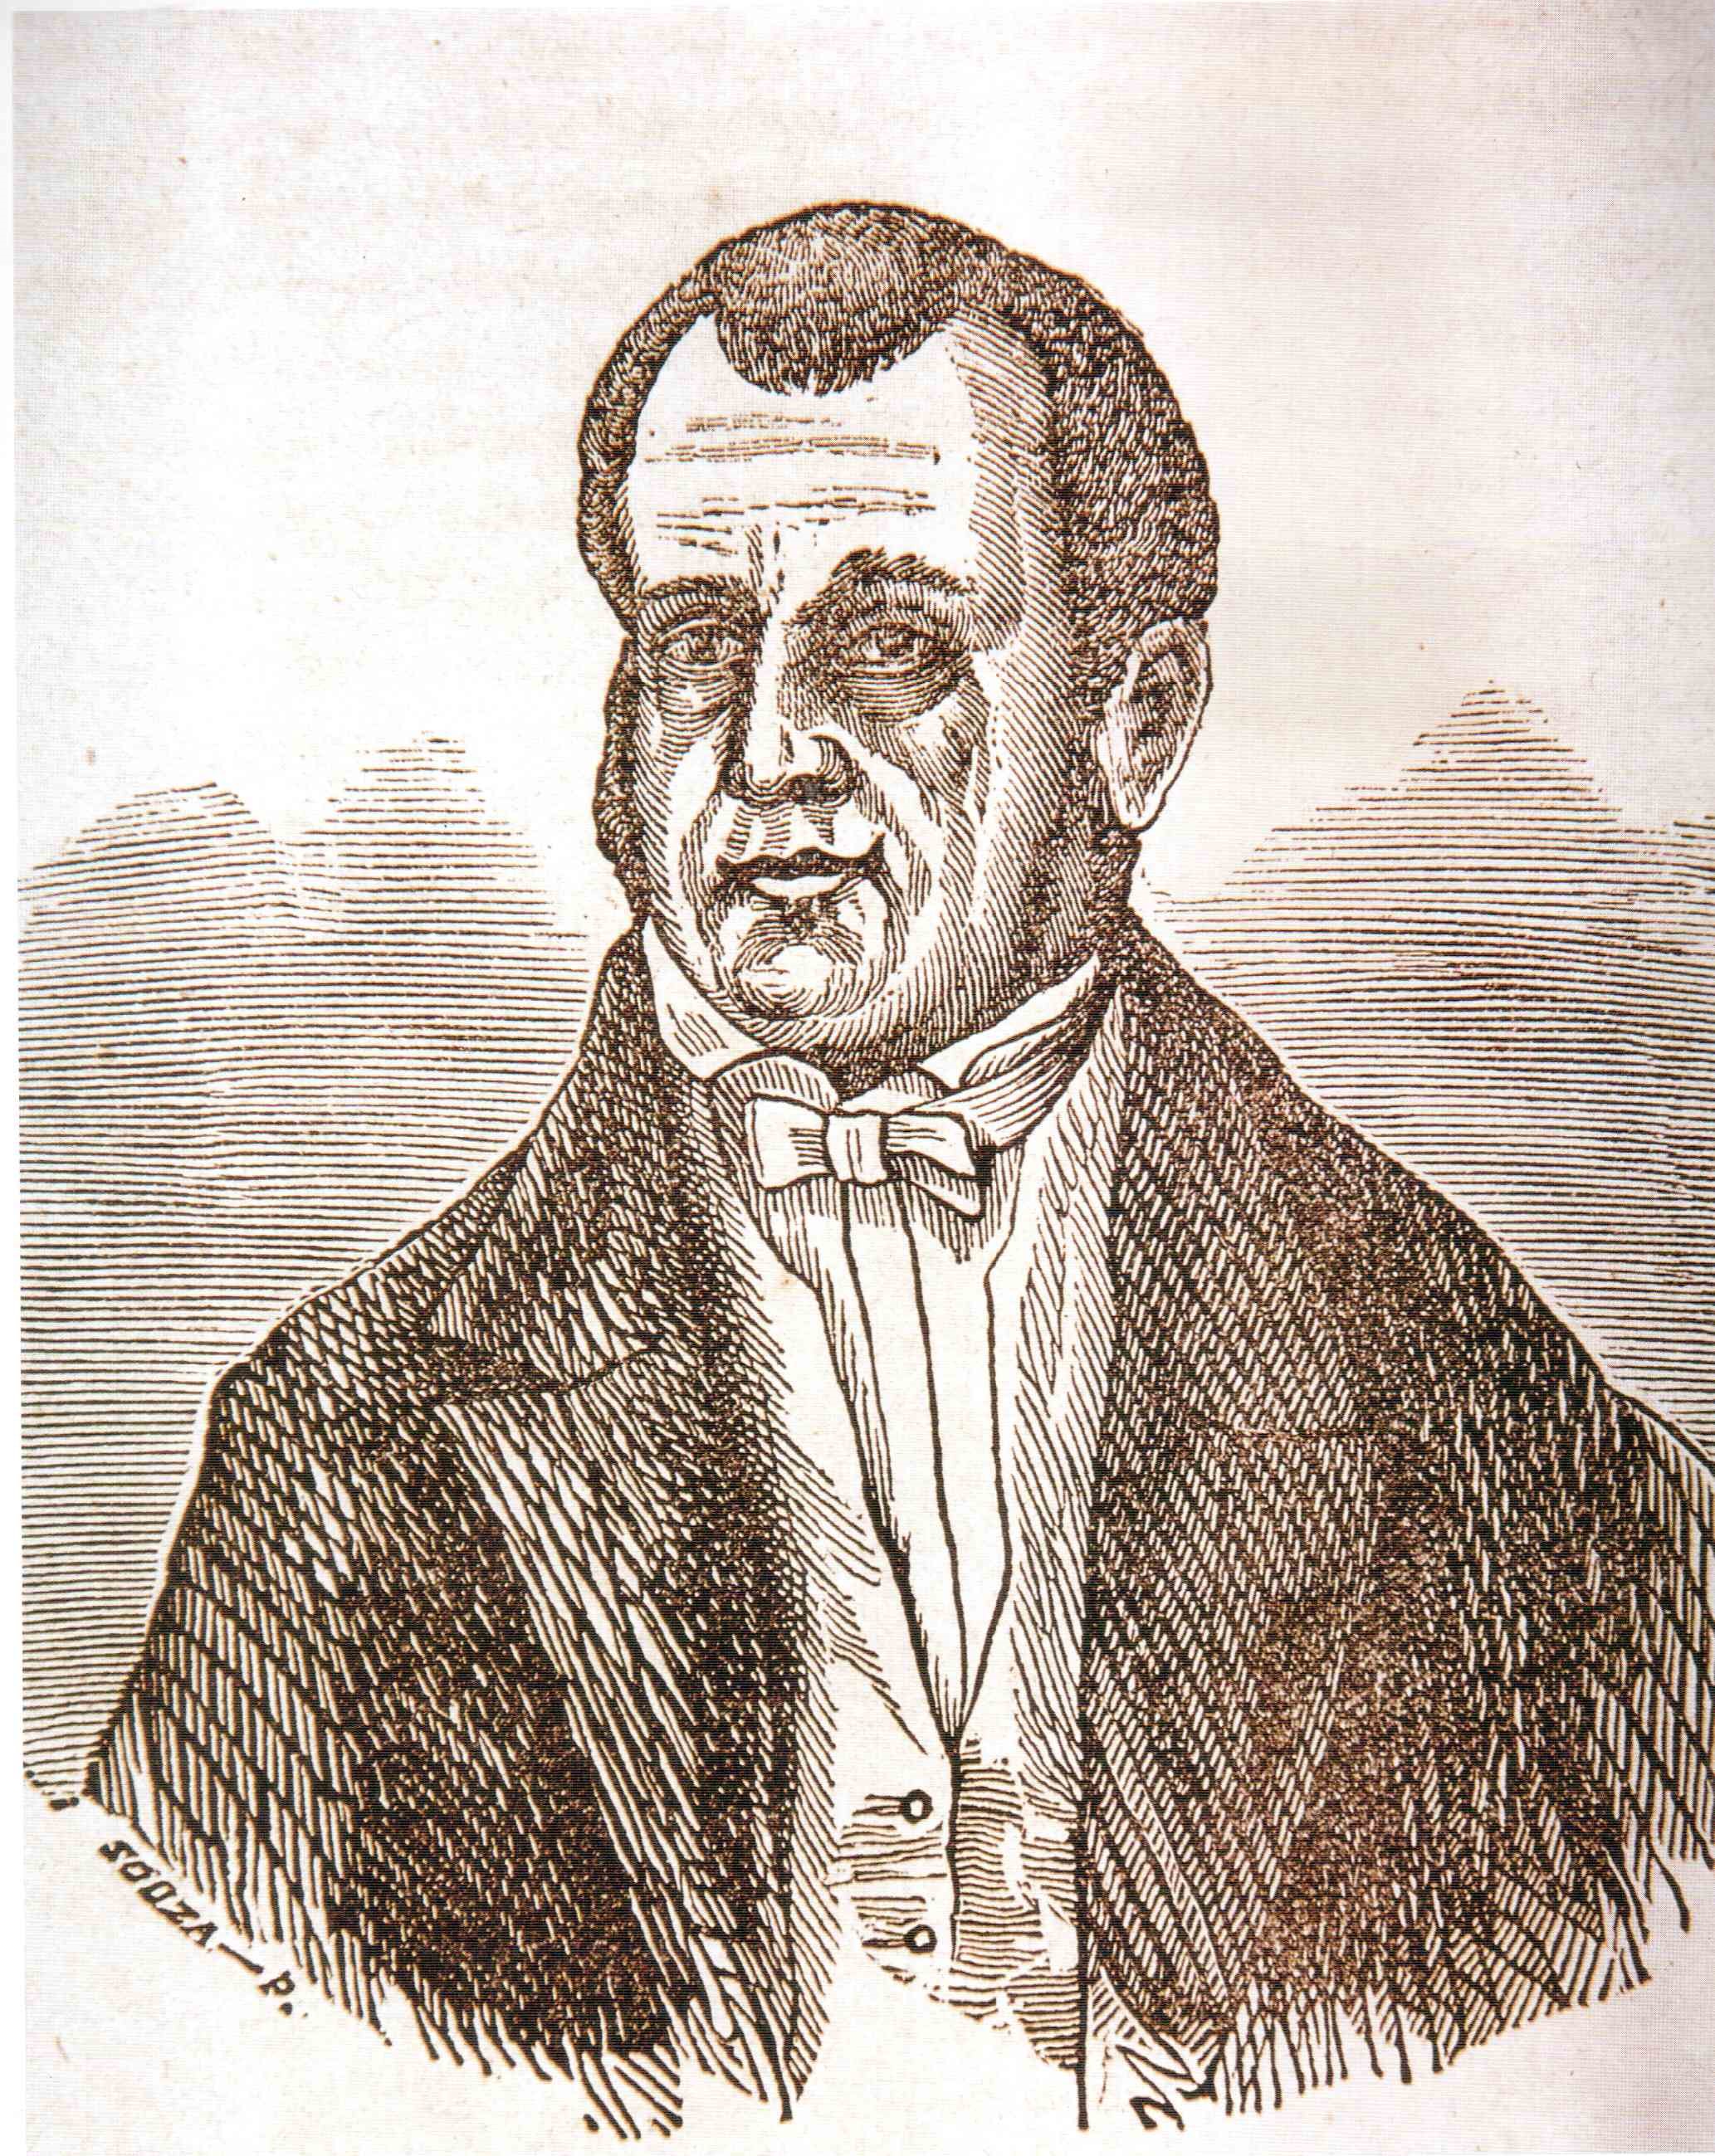 PEDRO ALEXANDRINO DE CARVALHO (1729-1810): CARACTERIZAÇÃO MATERIAL